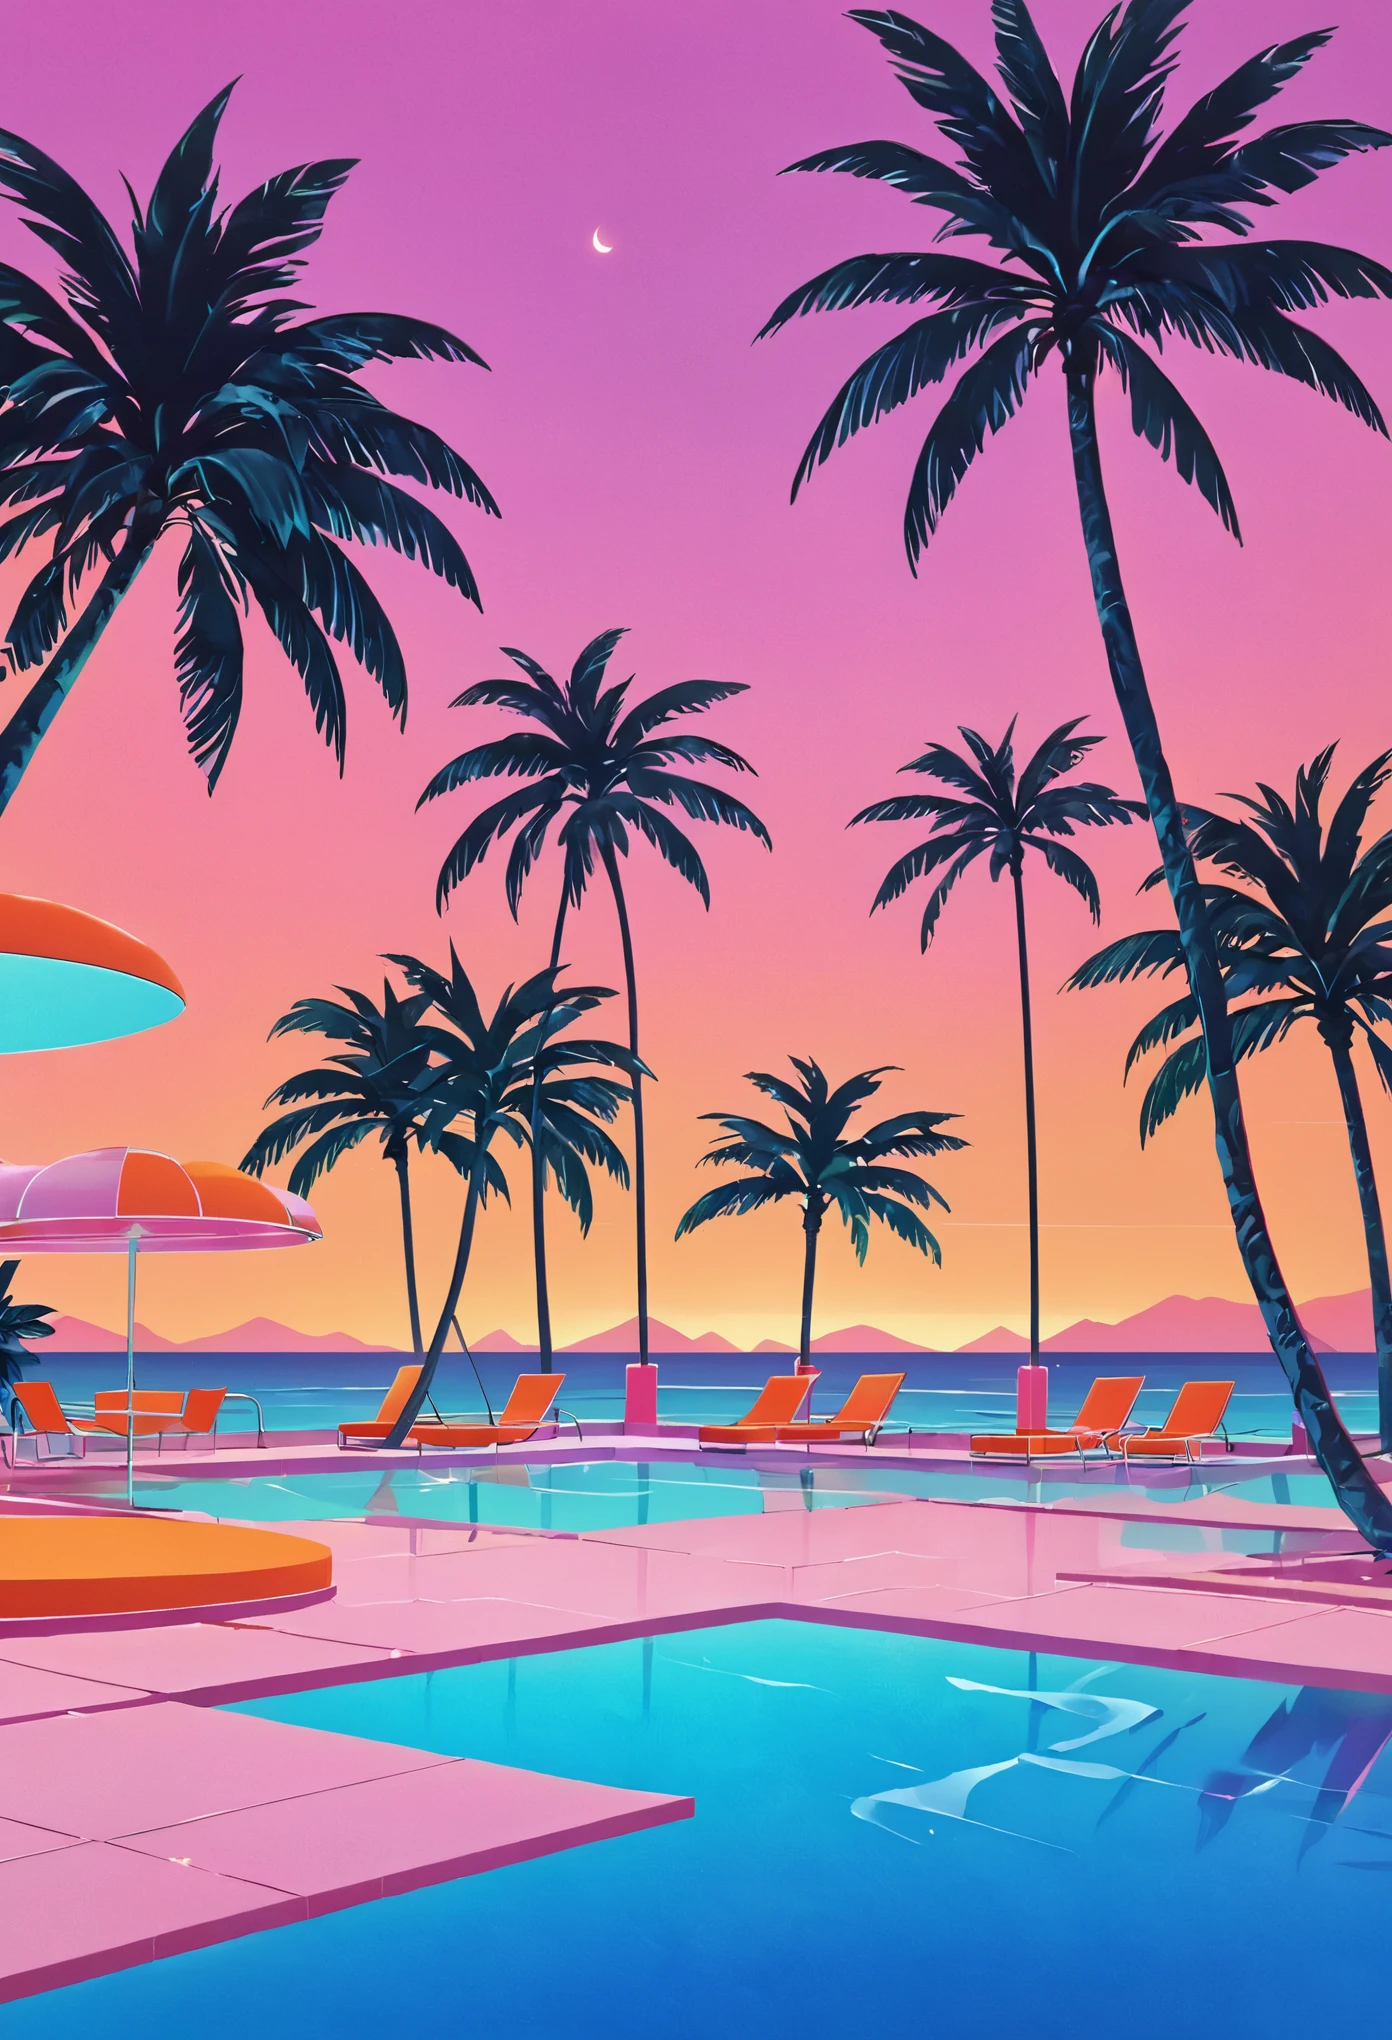 想像一件深深沉浸在 80 年代蒸氣波美學中的藝術品, 靈感來自本田洋子充滿活力的風格. 想像日落時復古未來派的泳池和海灘場景, 天空閃耀著 80 年代夏季日落的溫暖色調——深橙色, 粉紅色, 以及反射在平靜的海和泳池水面上的紅色. 泳池周圍, 霓虹燈照射下的棕櫚樹和椰子樹輕輕搖曳, 增強熱帶和超現實的氛圍. 幾何圖案的霓虹燈照亮了場景, 為一切投射出夢幻般的光芒. 背景是一家別緻的海濱酒吧，透過大玻璃窗可以看到內部裝潢, 展示的房間擁有柔和色彩的牆壁和地板，上面覆蓋著豪華的水磨石和大理石紋理. 整體氛圍將懷舊奢華與充滿活力融為一體, 暖色调调色板, 創造了一個既永恆又明顯讓人回想起 80 年代的場景.